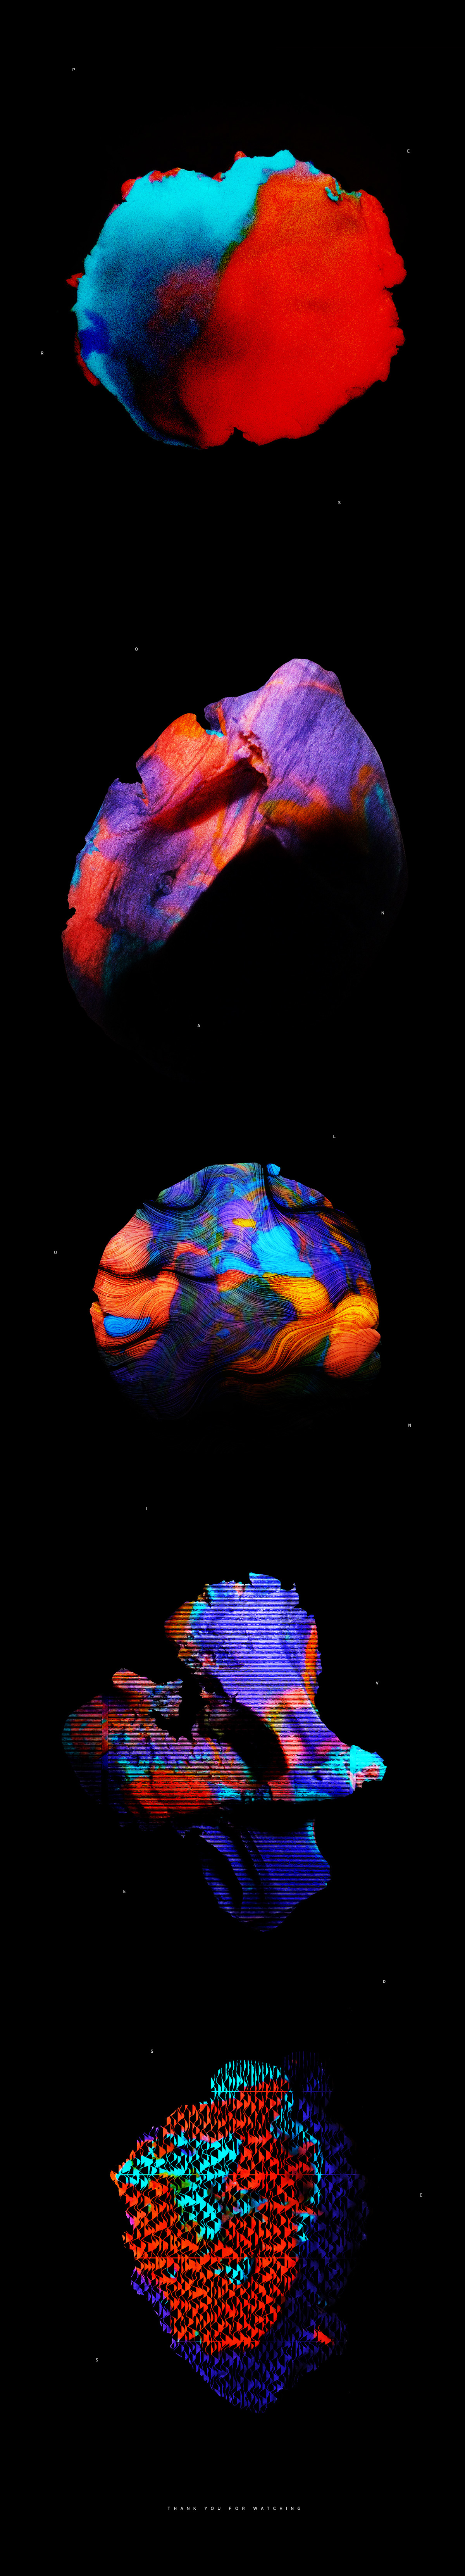 Plasticine colors universe shape texture